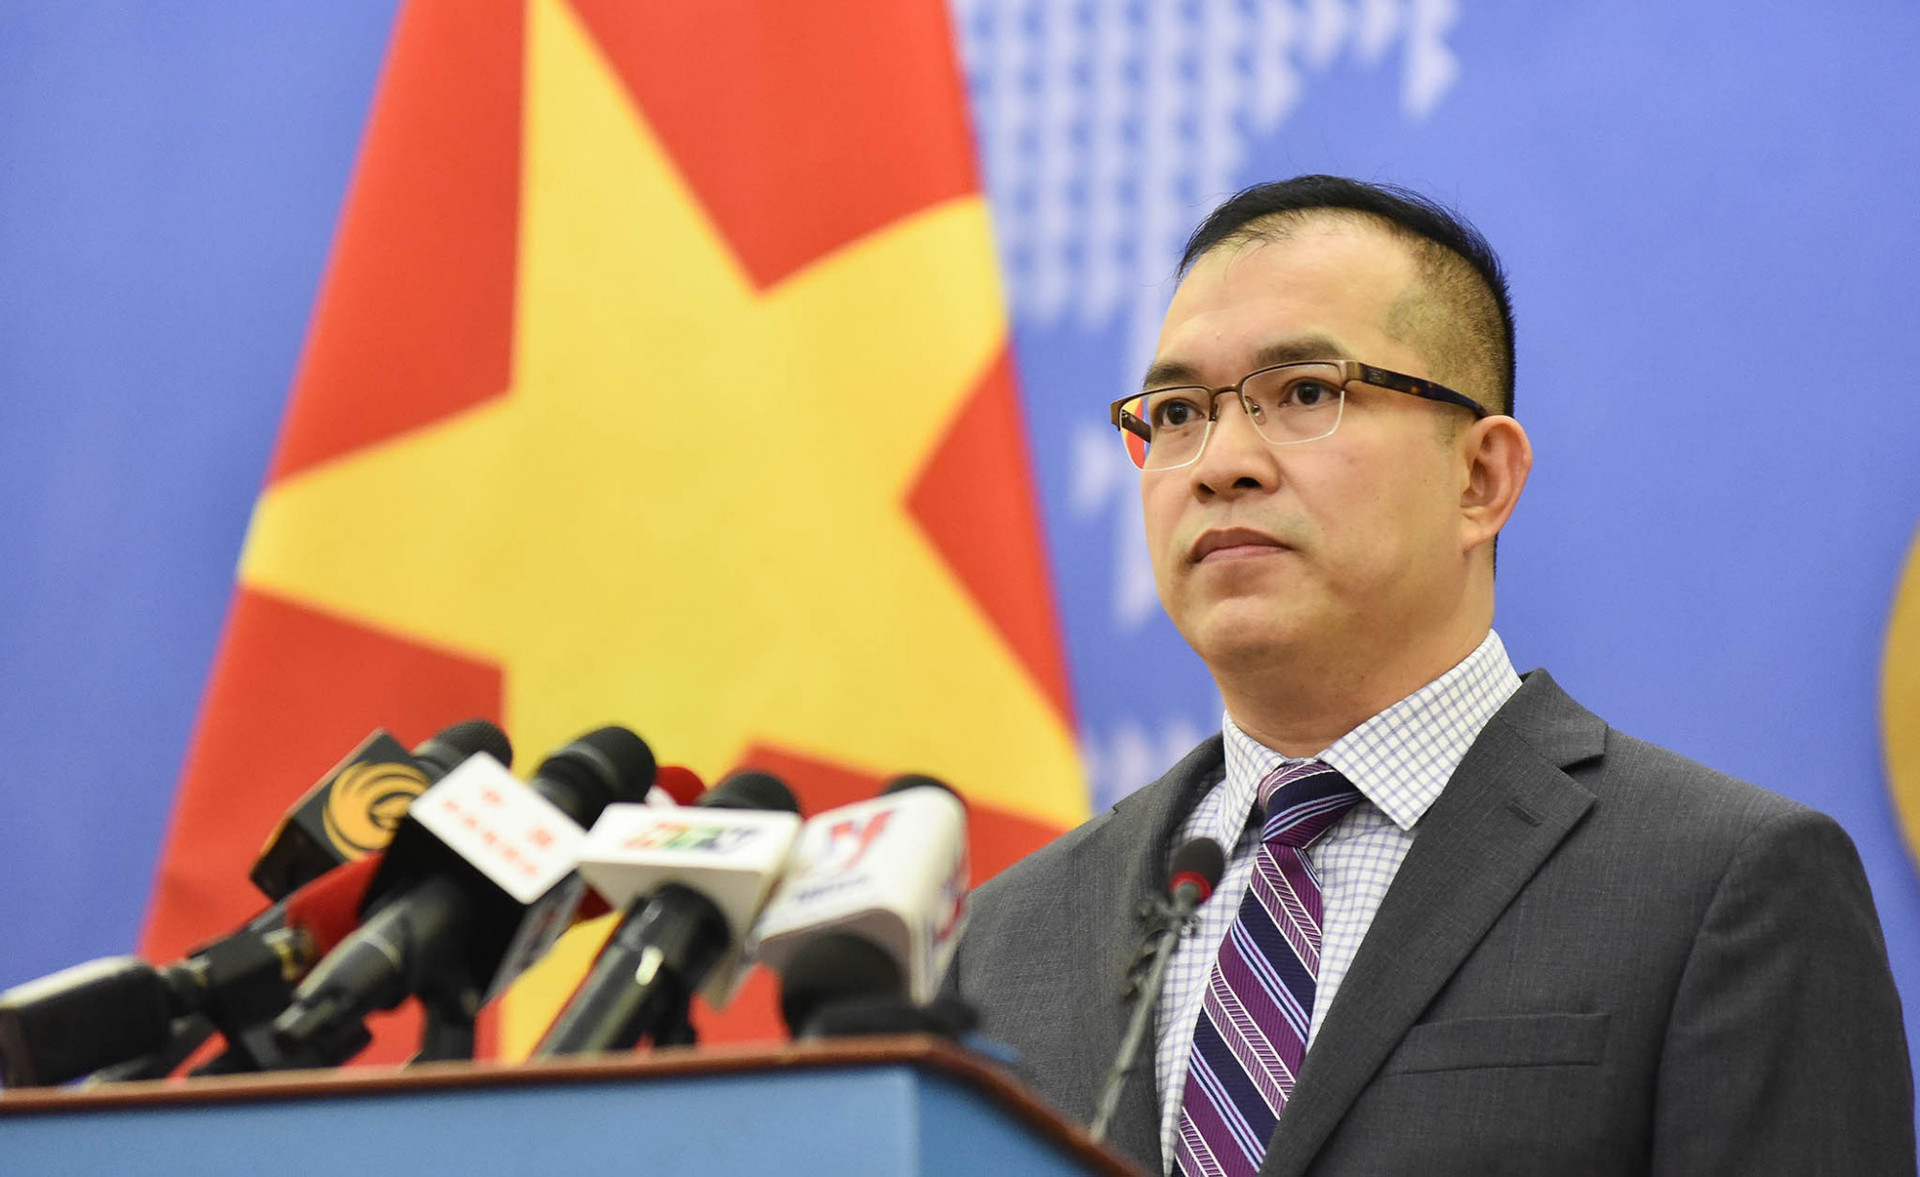 Phó Phát ngôn Bộ Ngoại giao Nguyễn Đức Thắng - Ảnh: BNG

